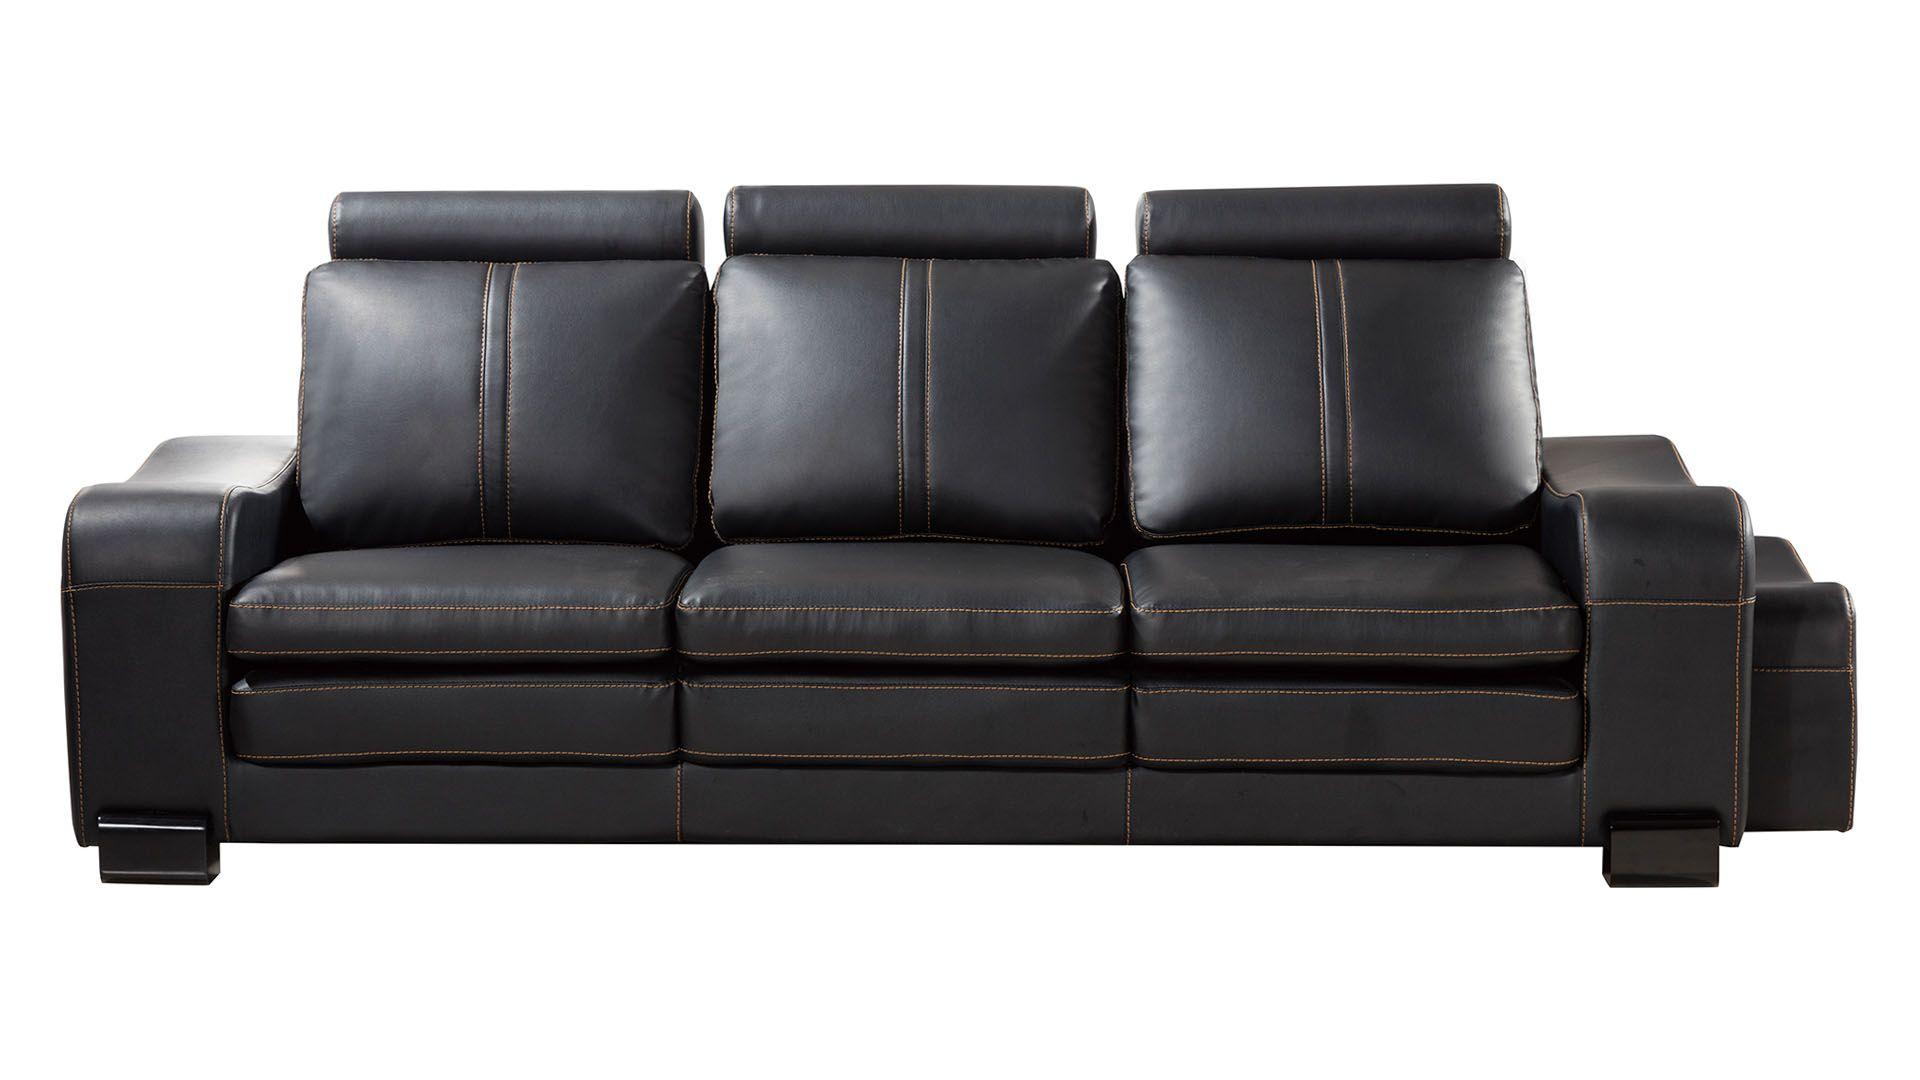 

    
American Eagle Furniture AE210-BK Sofa Set Black AE210-BK-6PC
